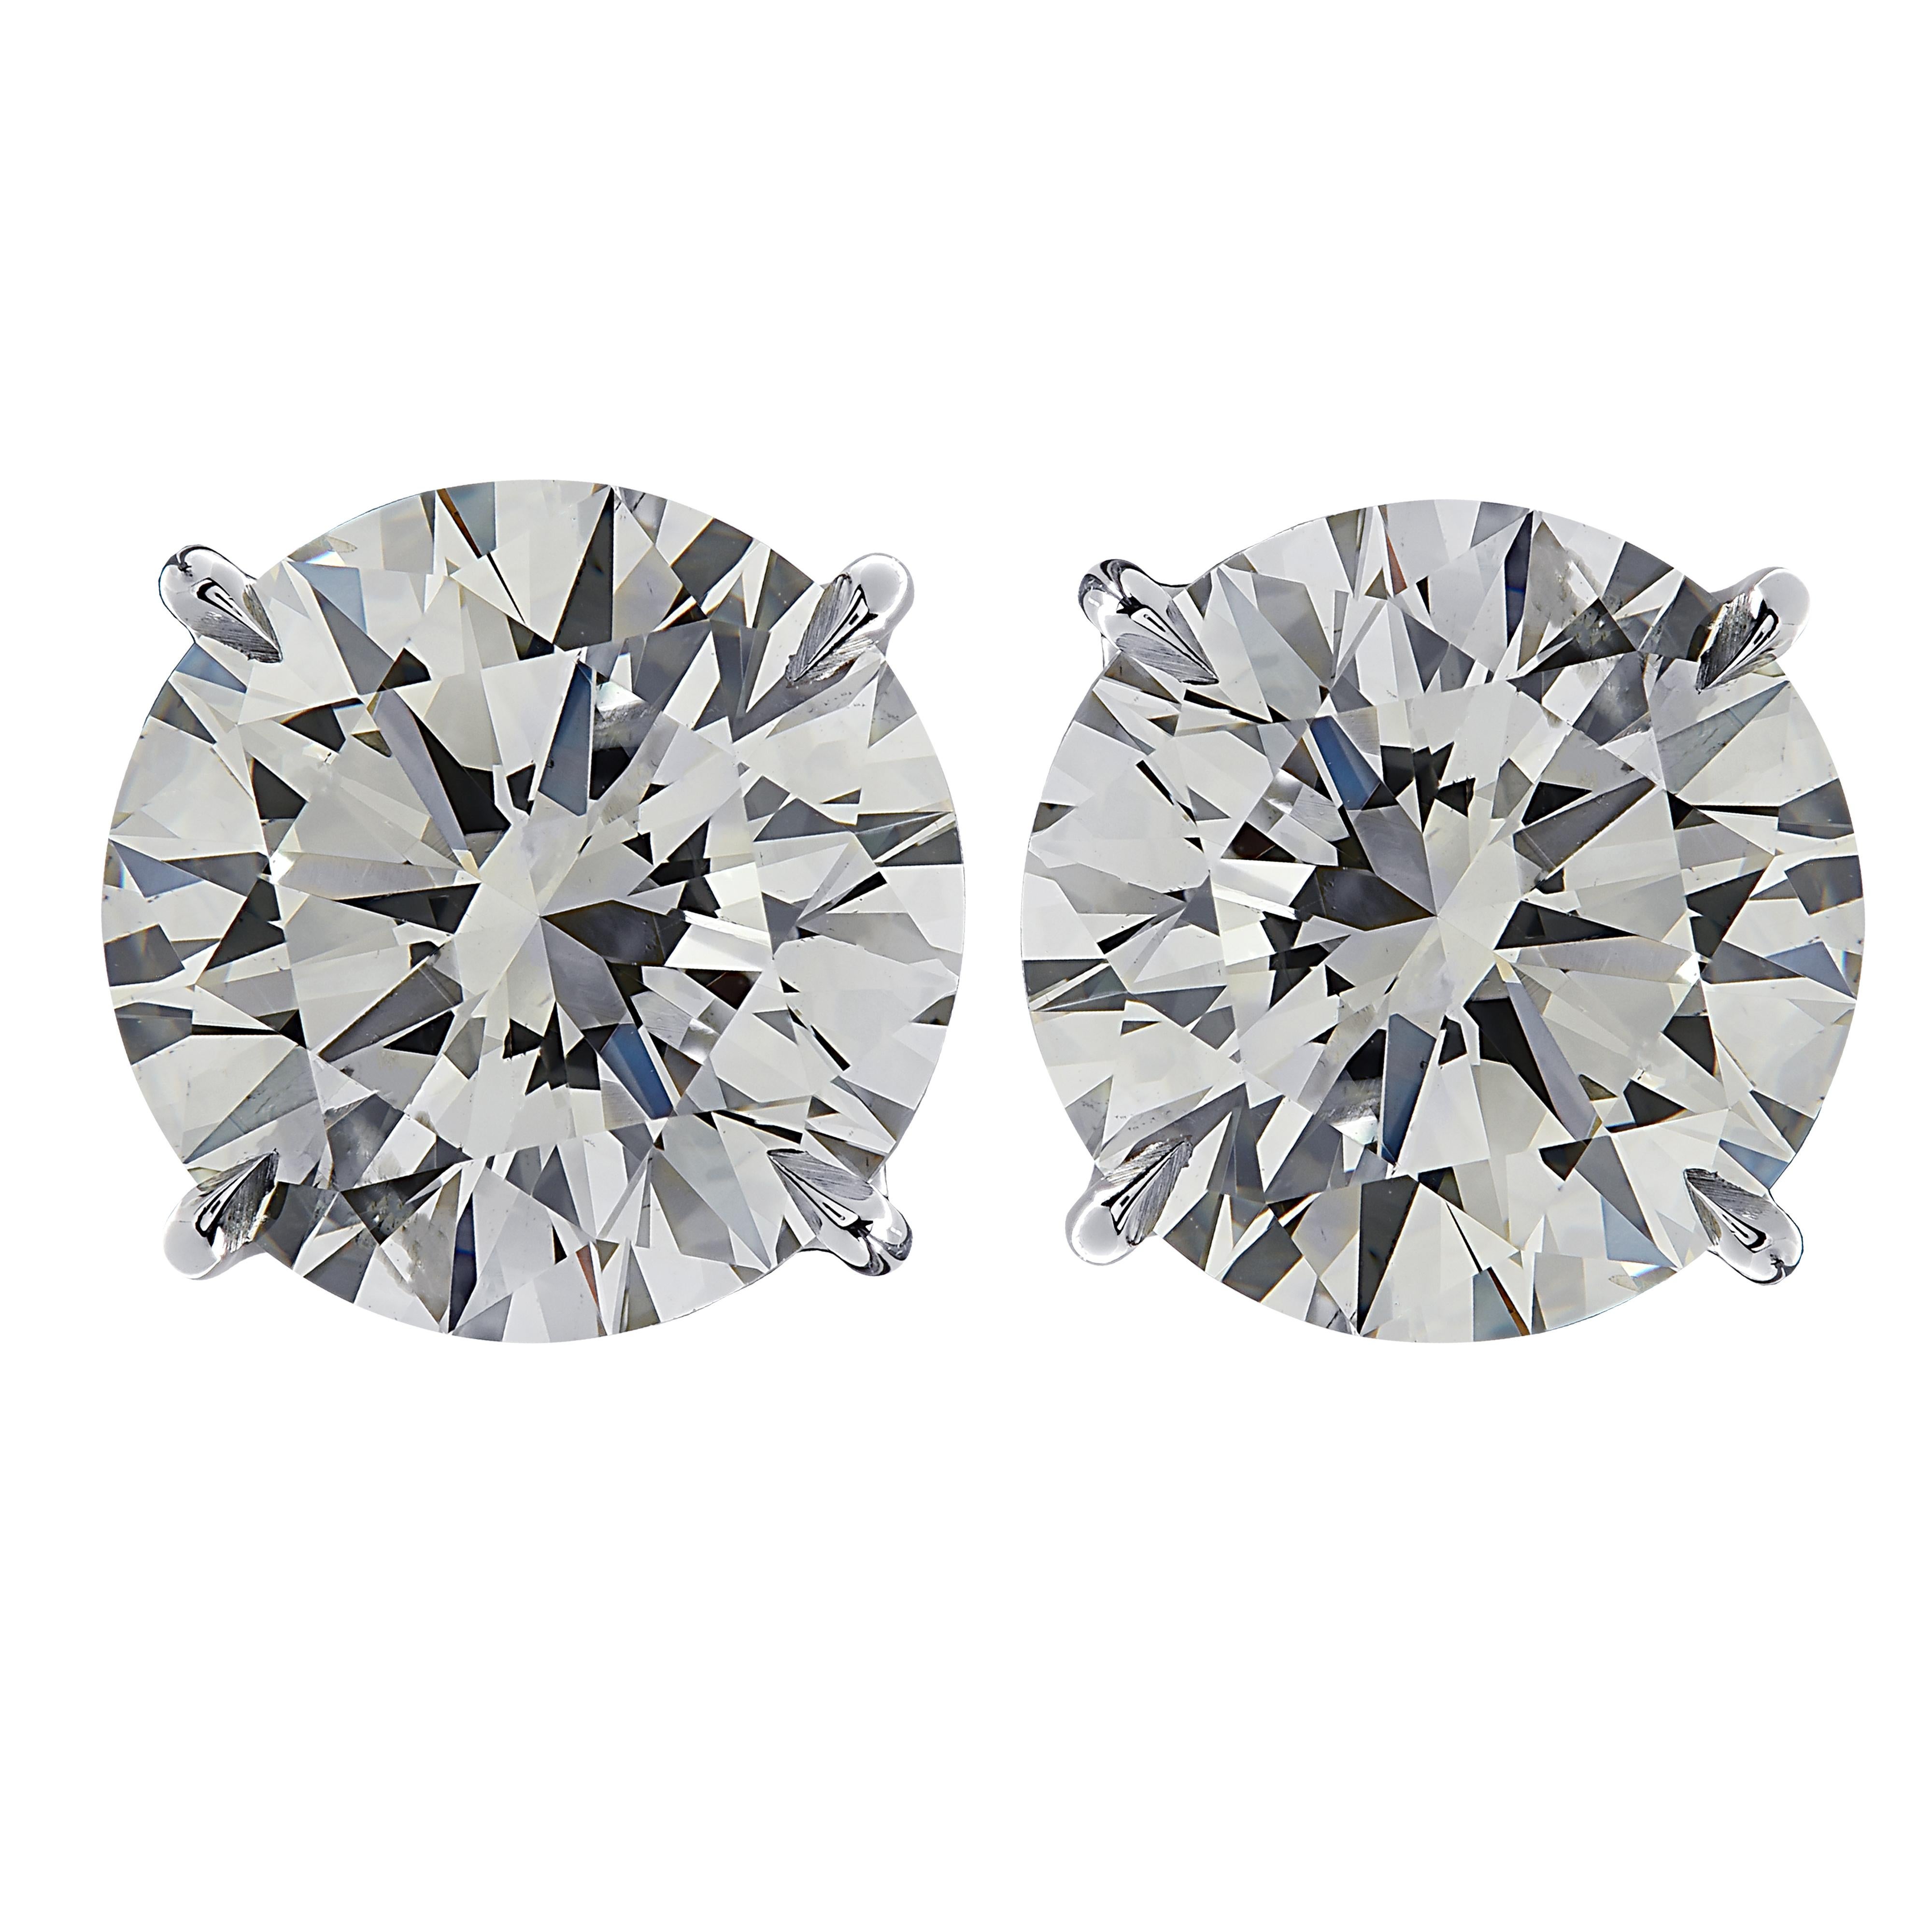 Atemberaubende Vivid Diamonds Solitär-Ohrstecker in Platin gefertigt, präsentiert 2 spektakuläre GIA-zertifizierte runde Diamanten im Brillantschliff mit einem Gesamtgewicht von 6,01 Karat, I Farbe SI2 Klarheit. Diese Diamanten wurden sorgfältig